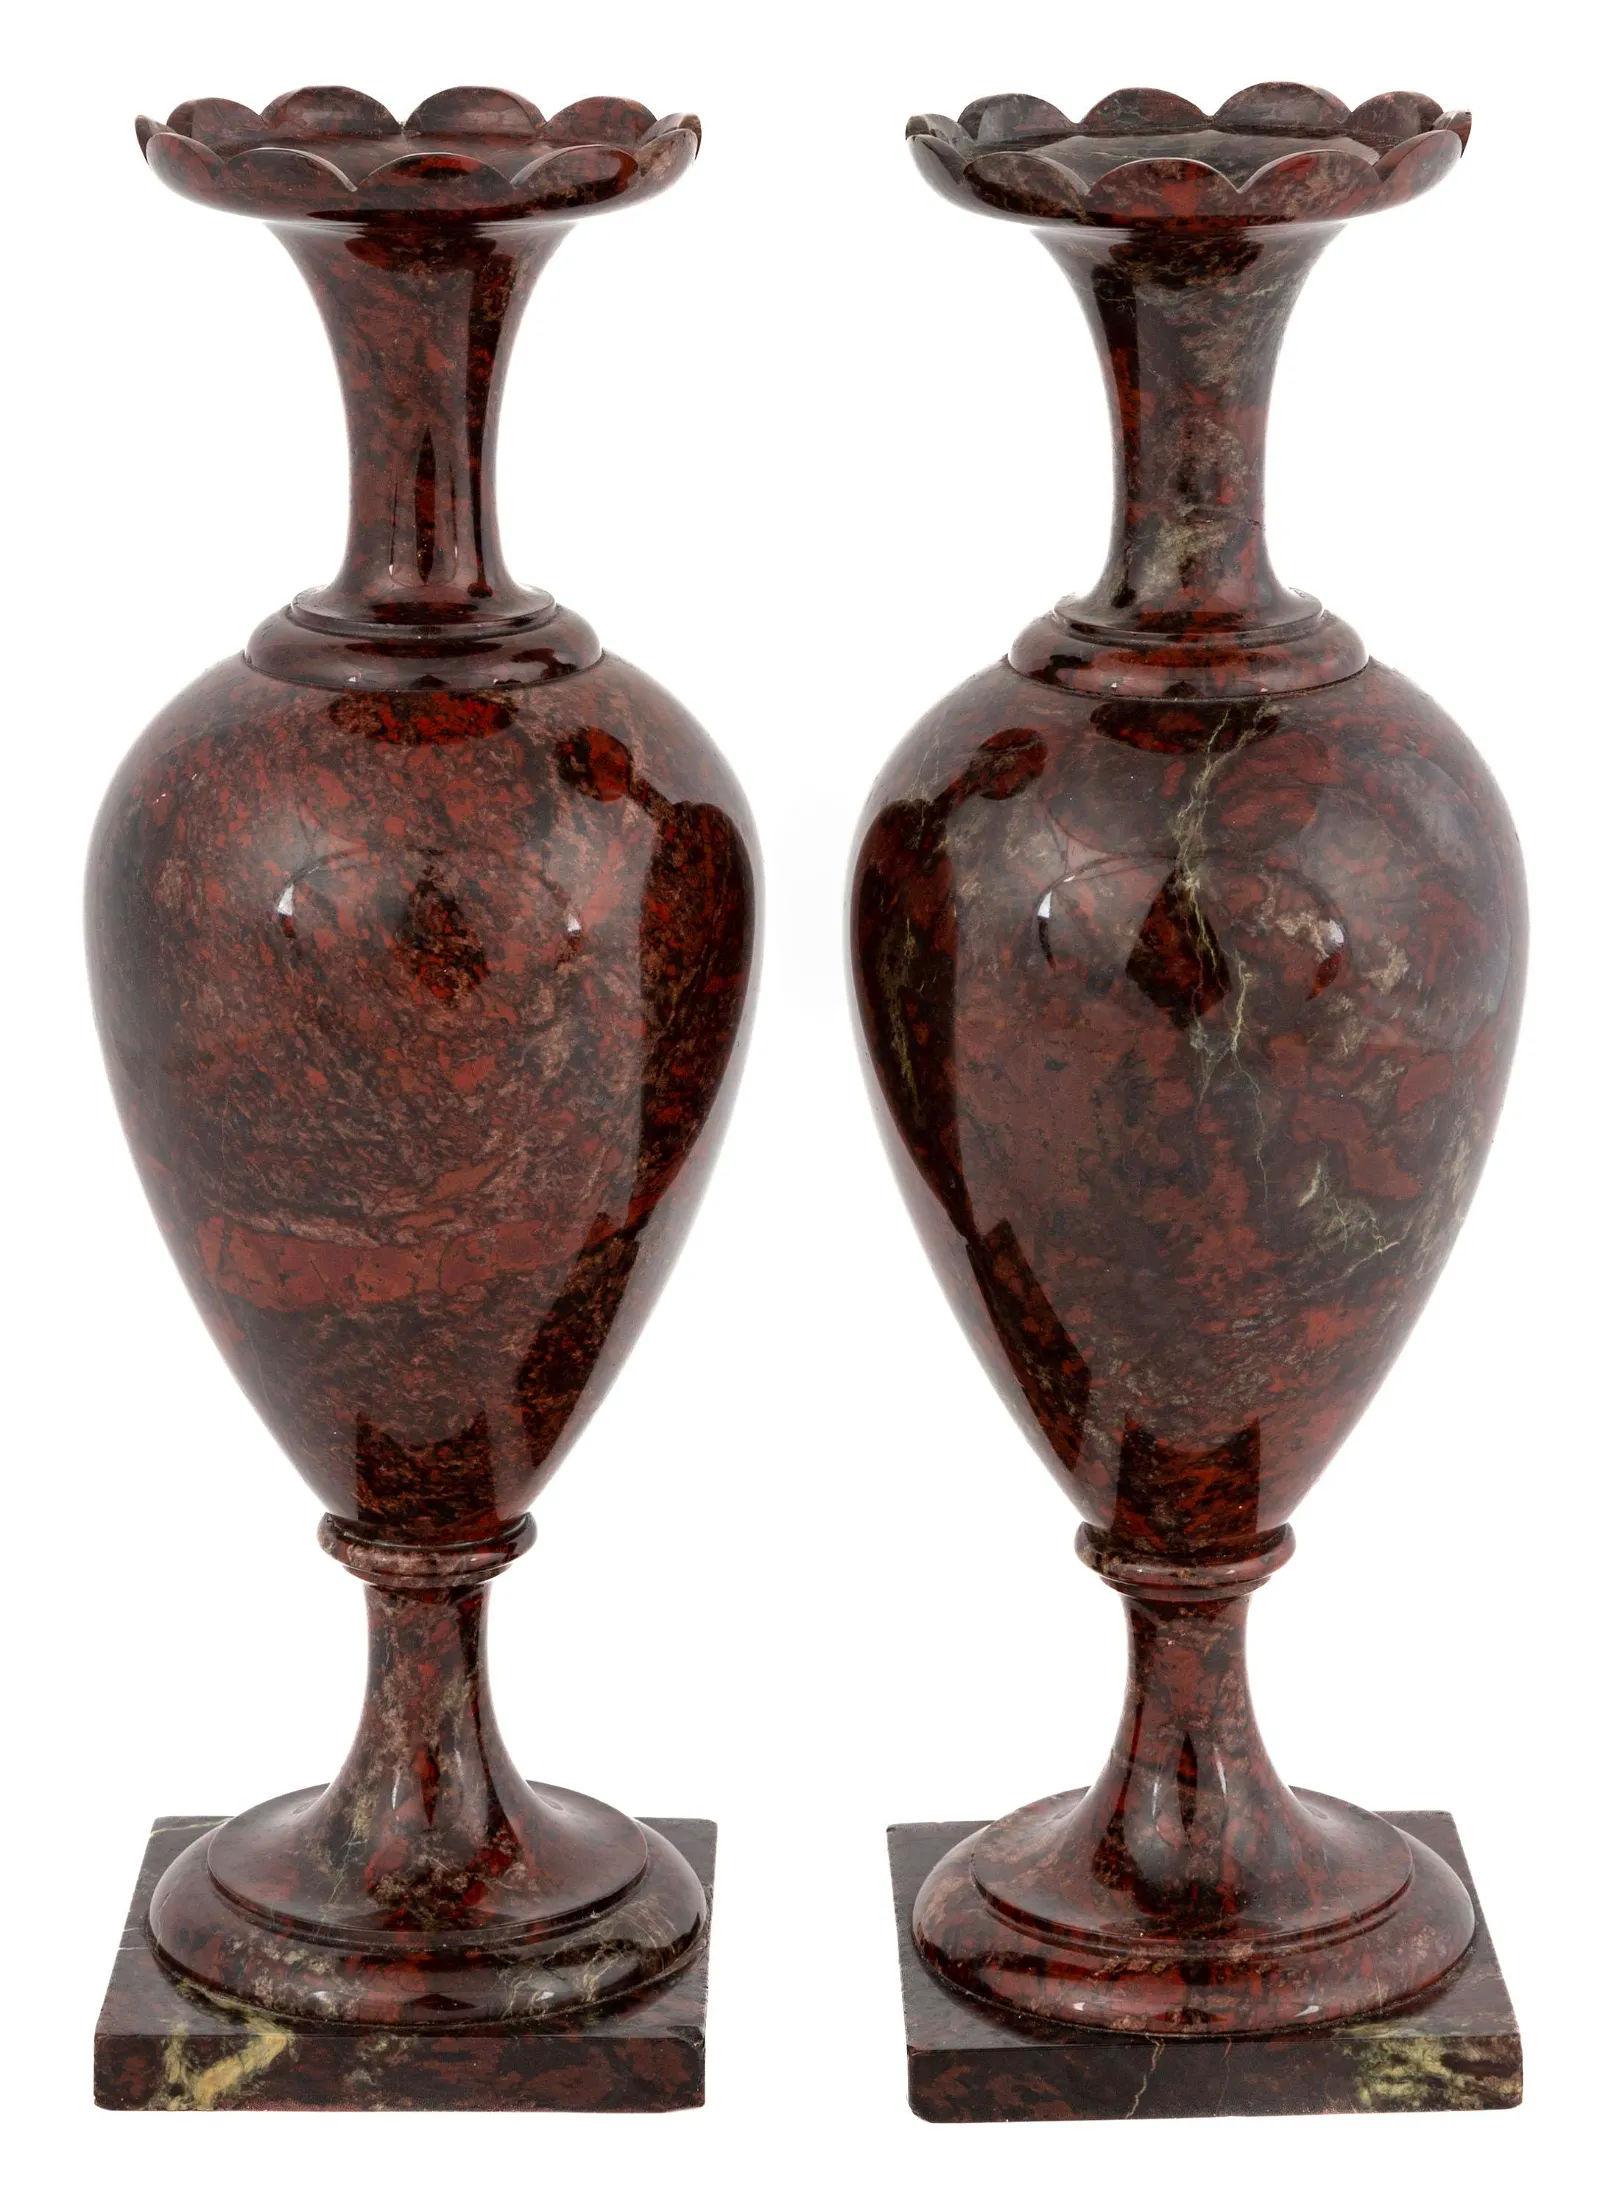 Notre paire de vases anciens est sculptée dans une pierre de jaspe brun rougeâtre et date de la fin du XIXe siècle. En bon état, avec des éraflures et de petits éclats sur les bases.